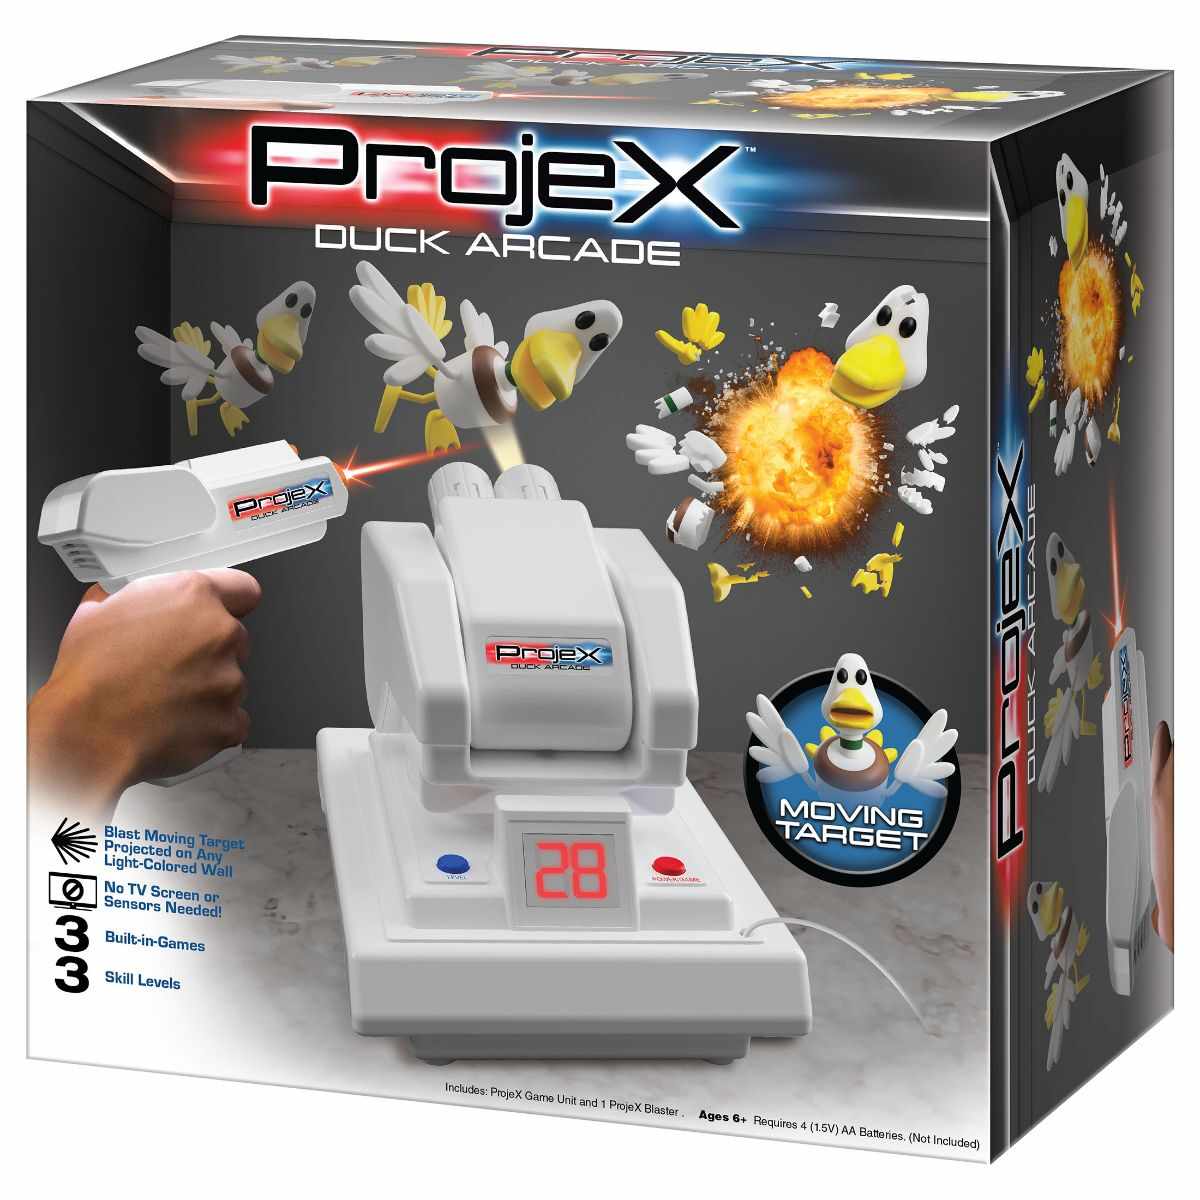 Consola de jocuri cu proiector si 1 blaster, Laser X, ProjeX Duck Arcade